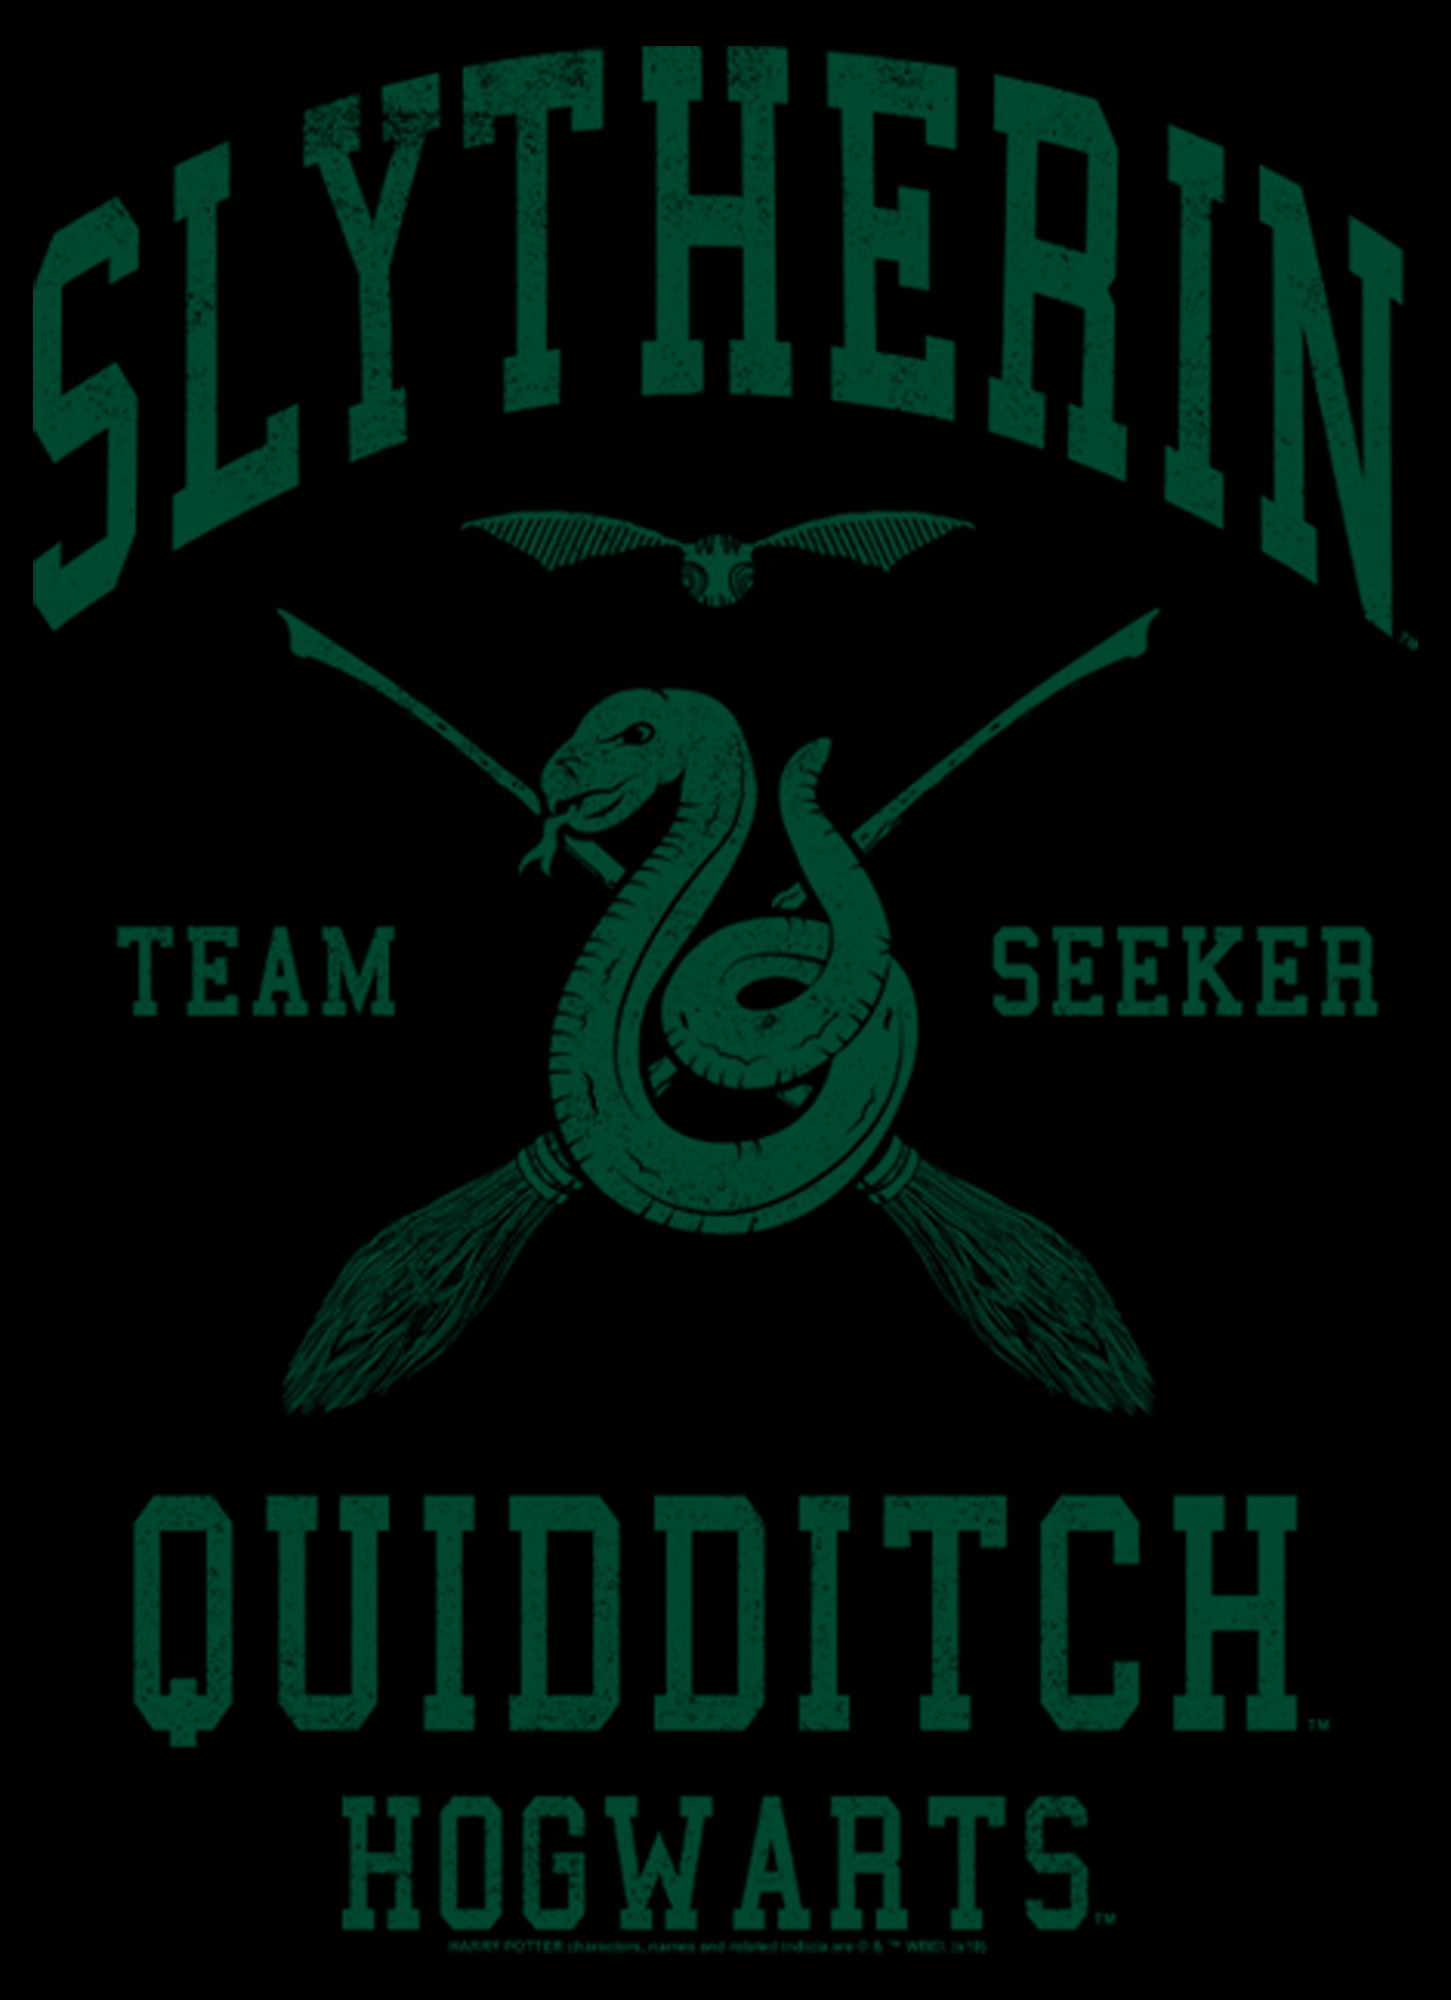 Black HP Wizard 40oz Quencher H2.0 Quidditch Hogwarts -  Denmark